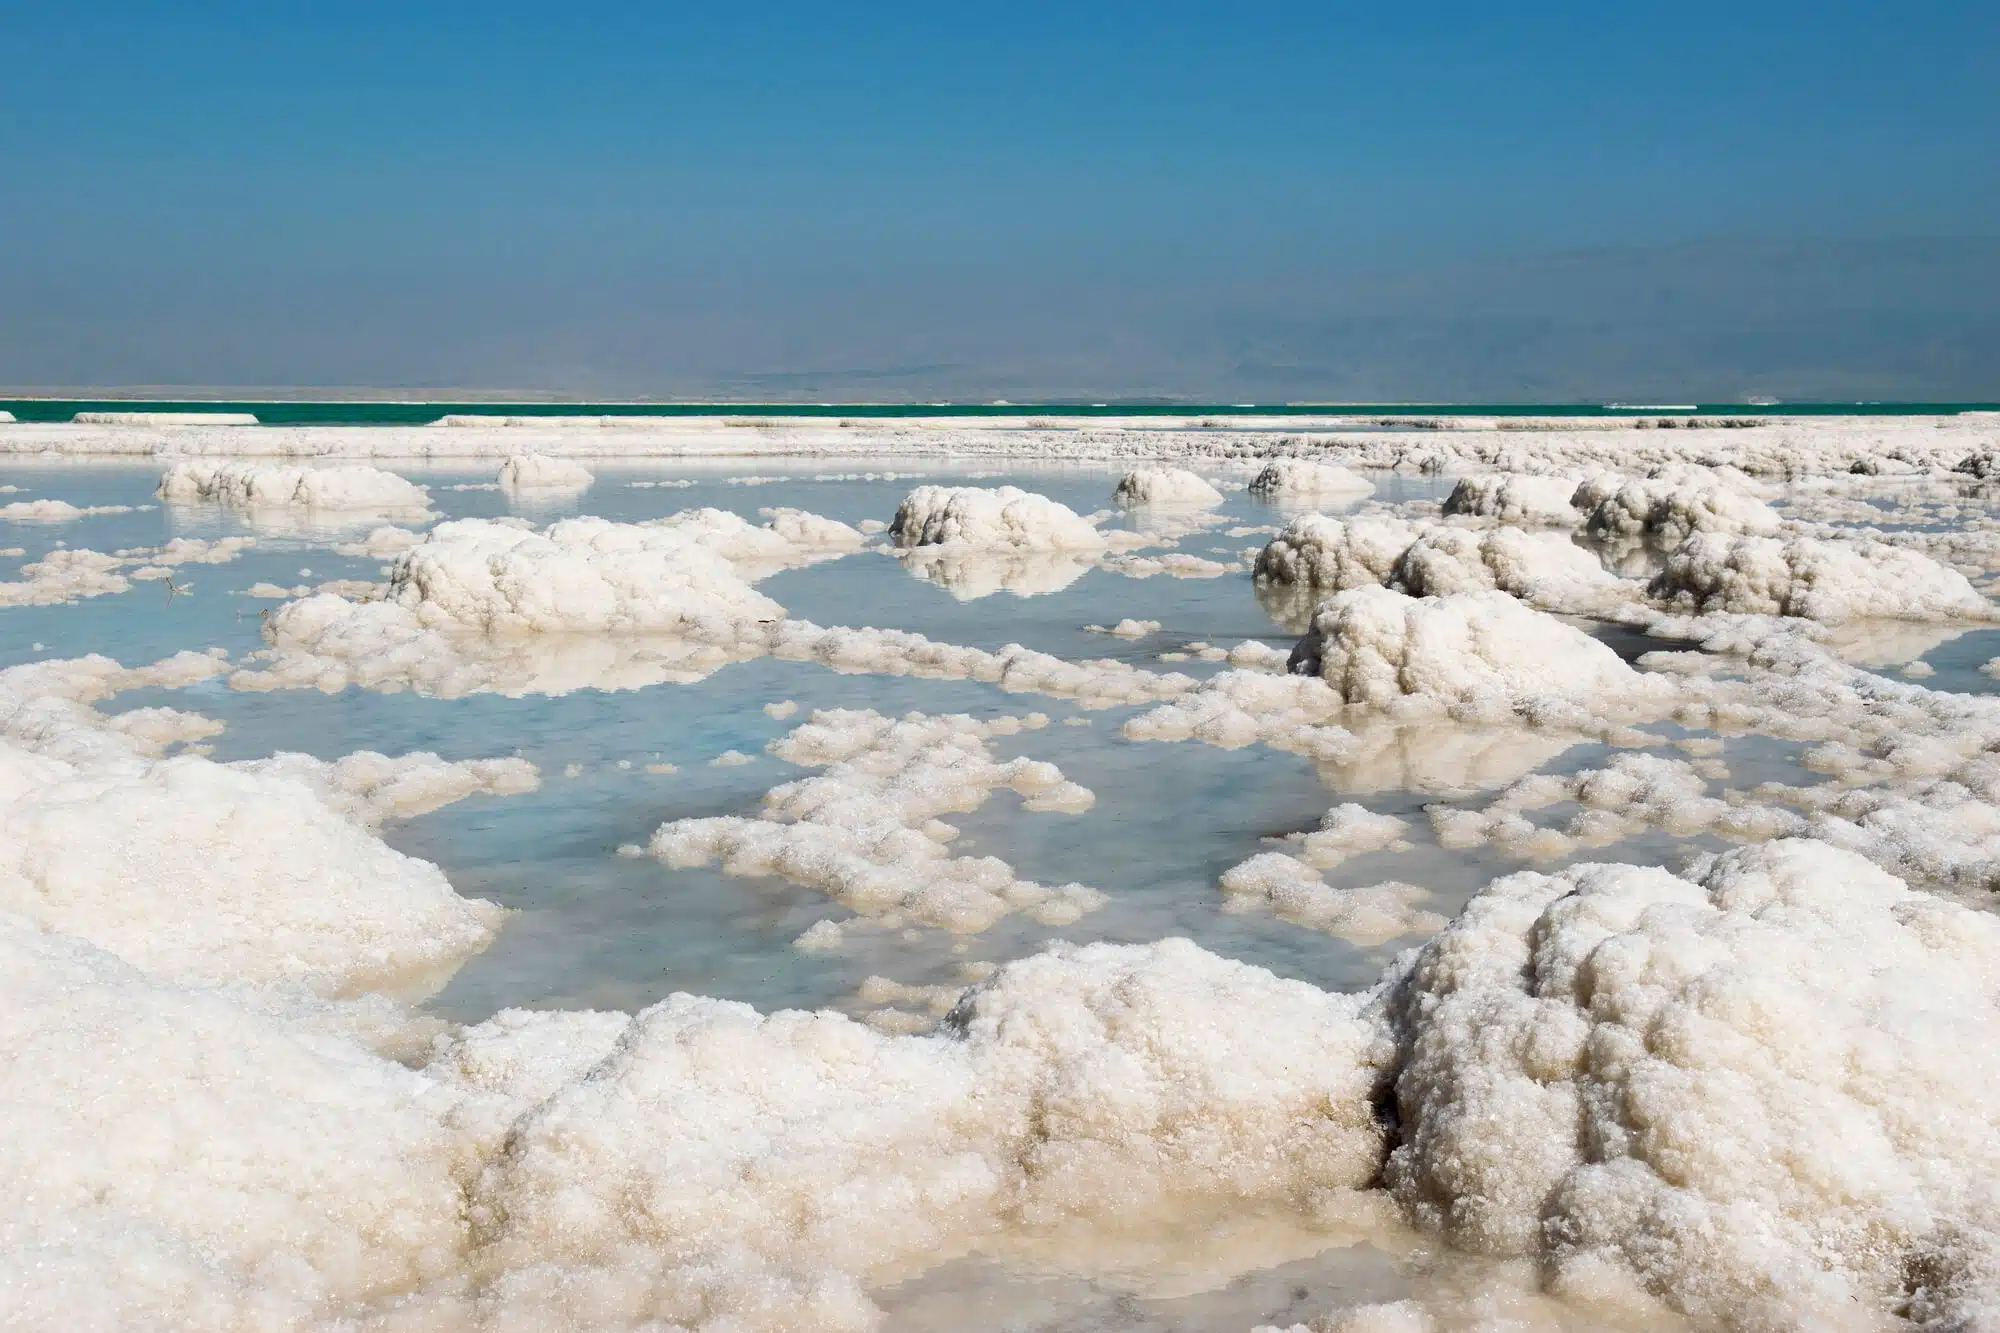 התייבשות ים המלח, אחת מתוצאות משבר האקלים. <a href="https://depositphotos.com. ">המחשה: depositphotos.com</a>   